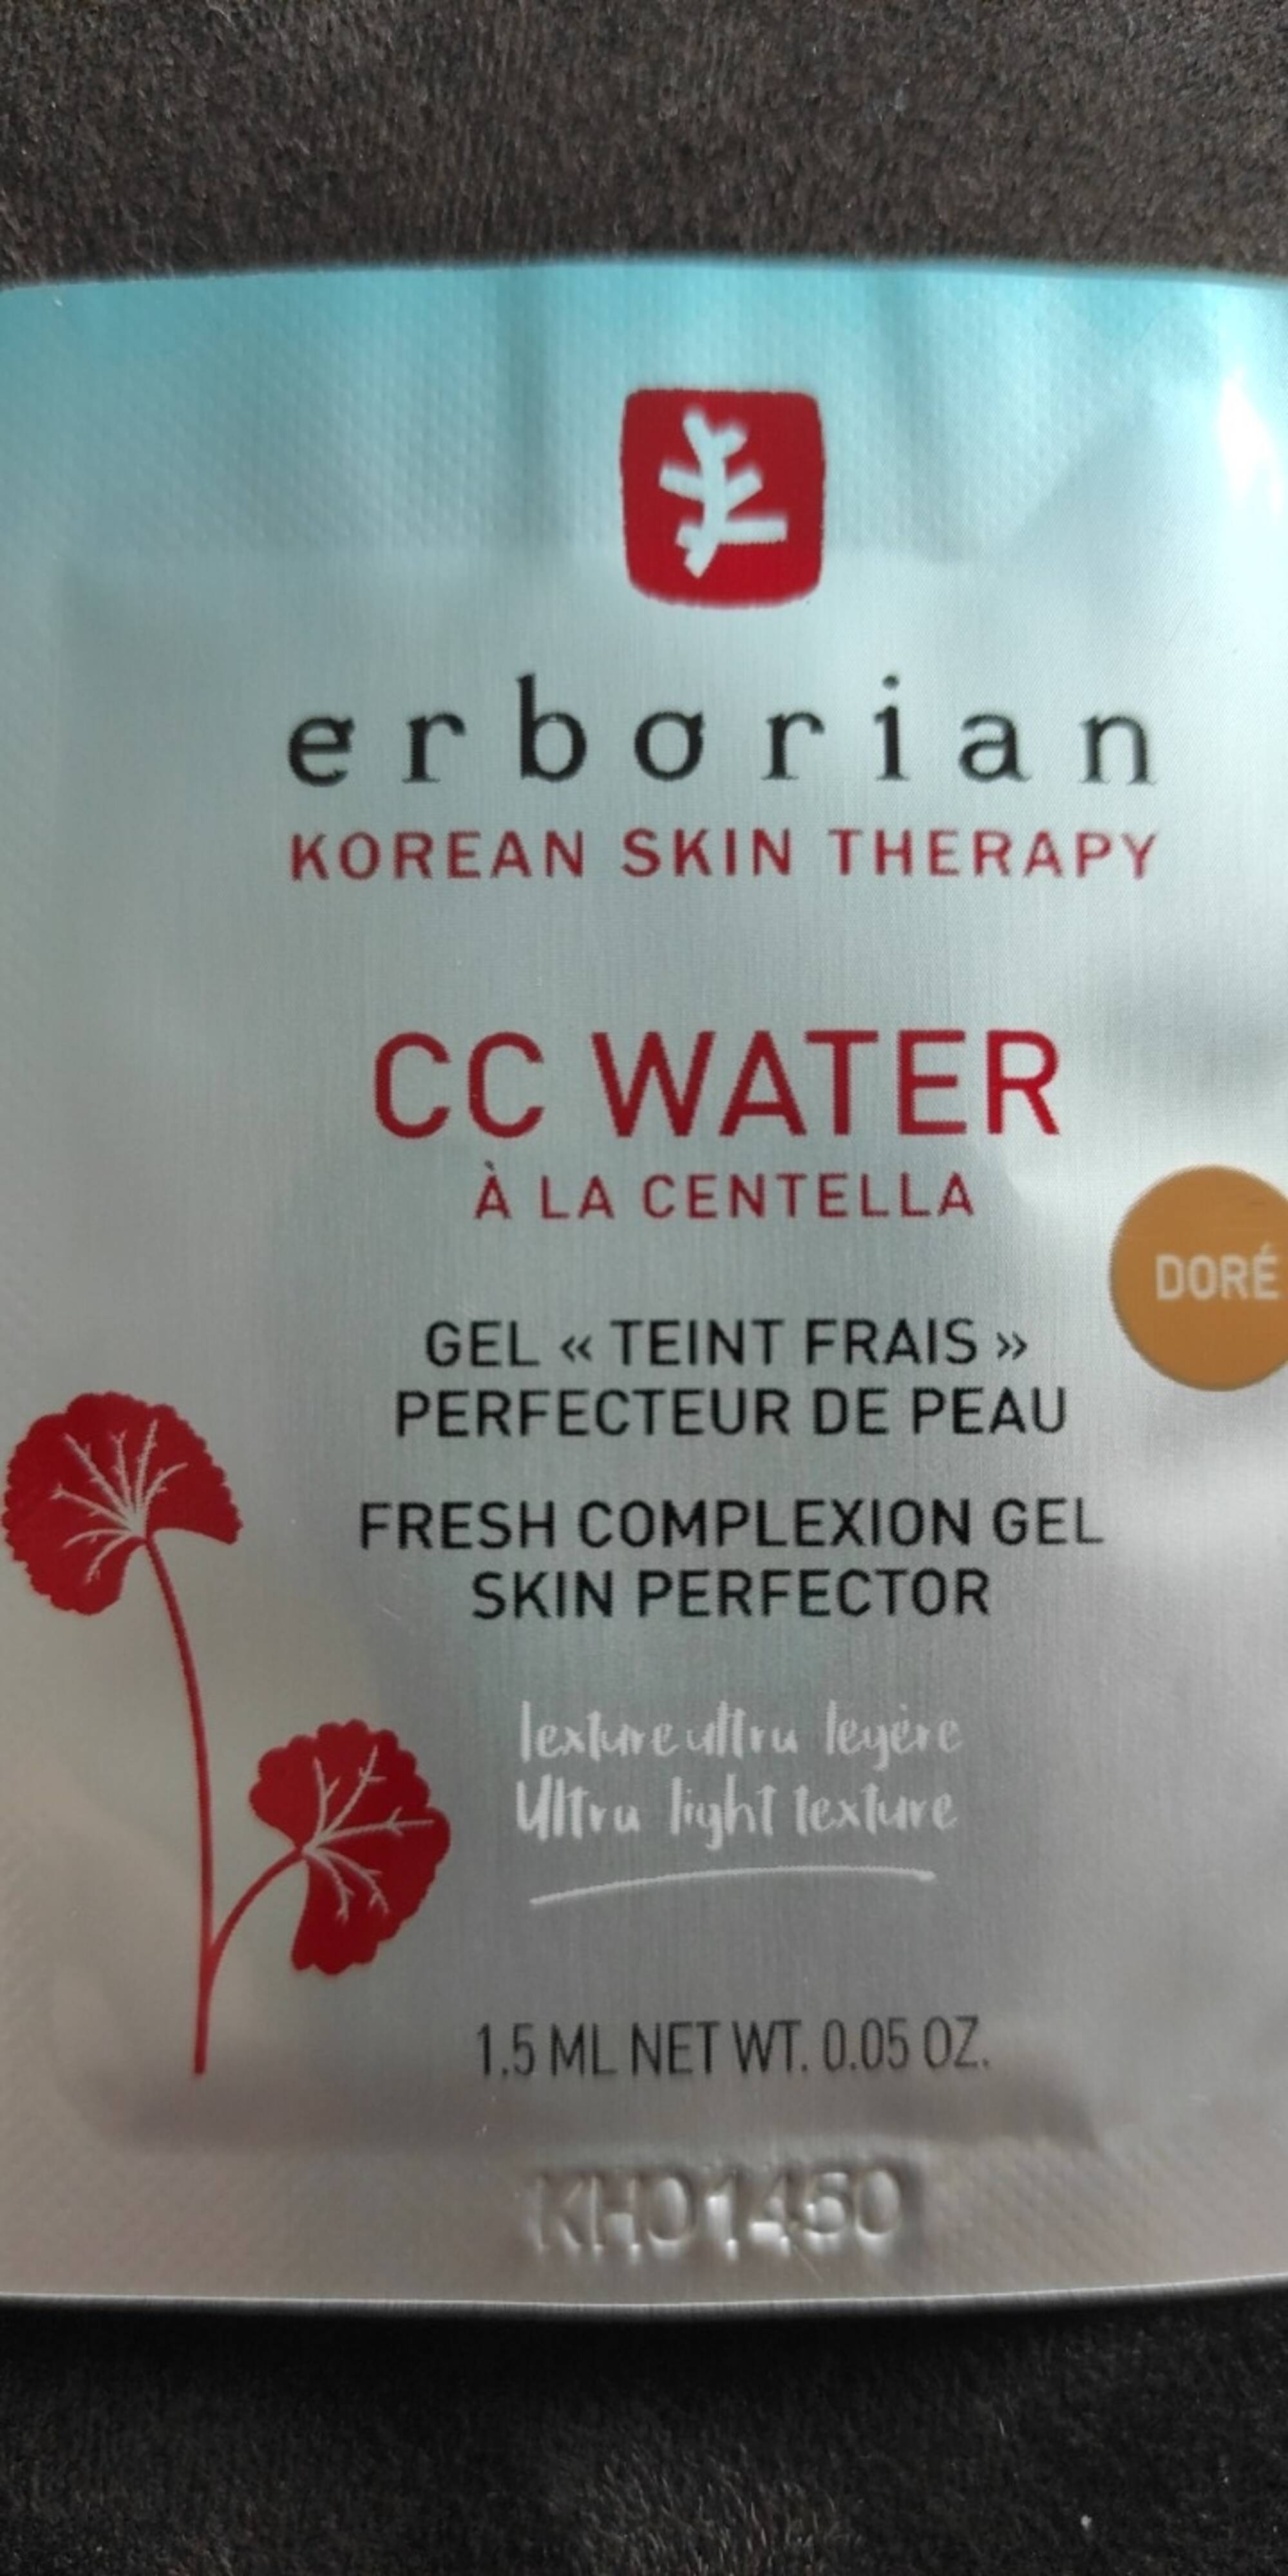 ERBORIAN - CC Water à la centella - Gel teint frais perfecteur de peau